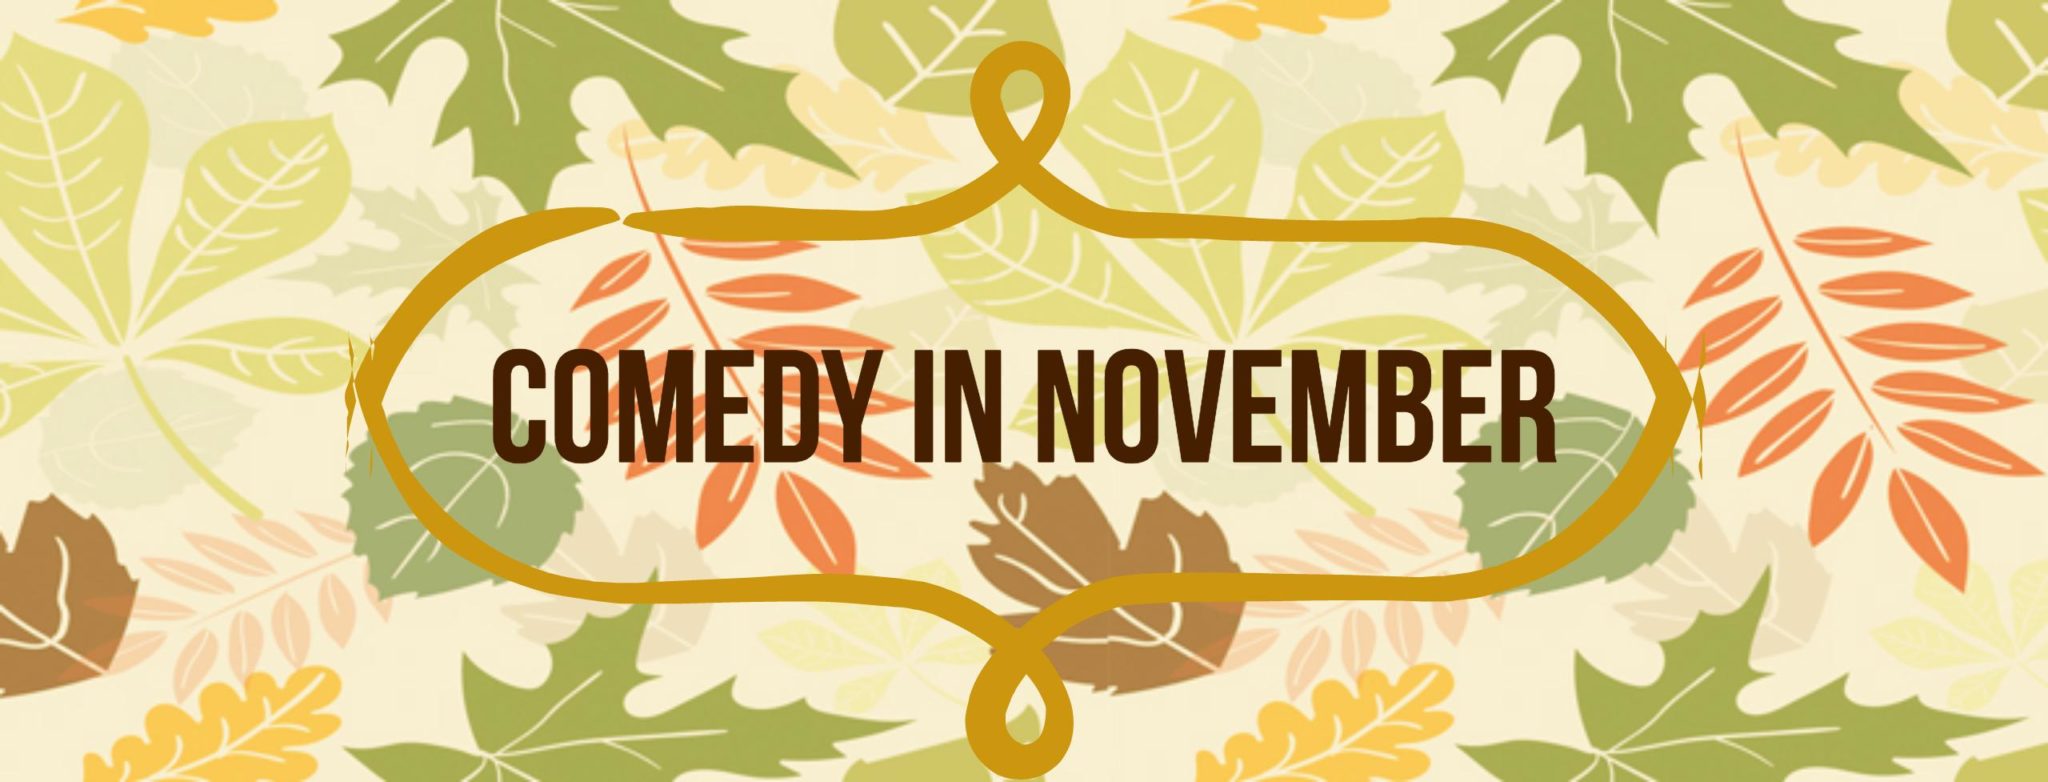 Comedy Shows in November